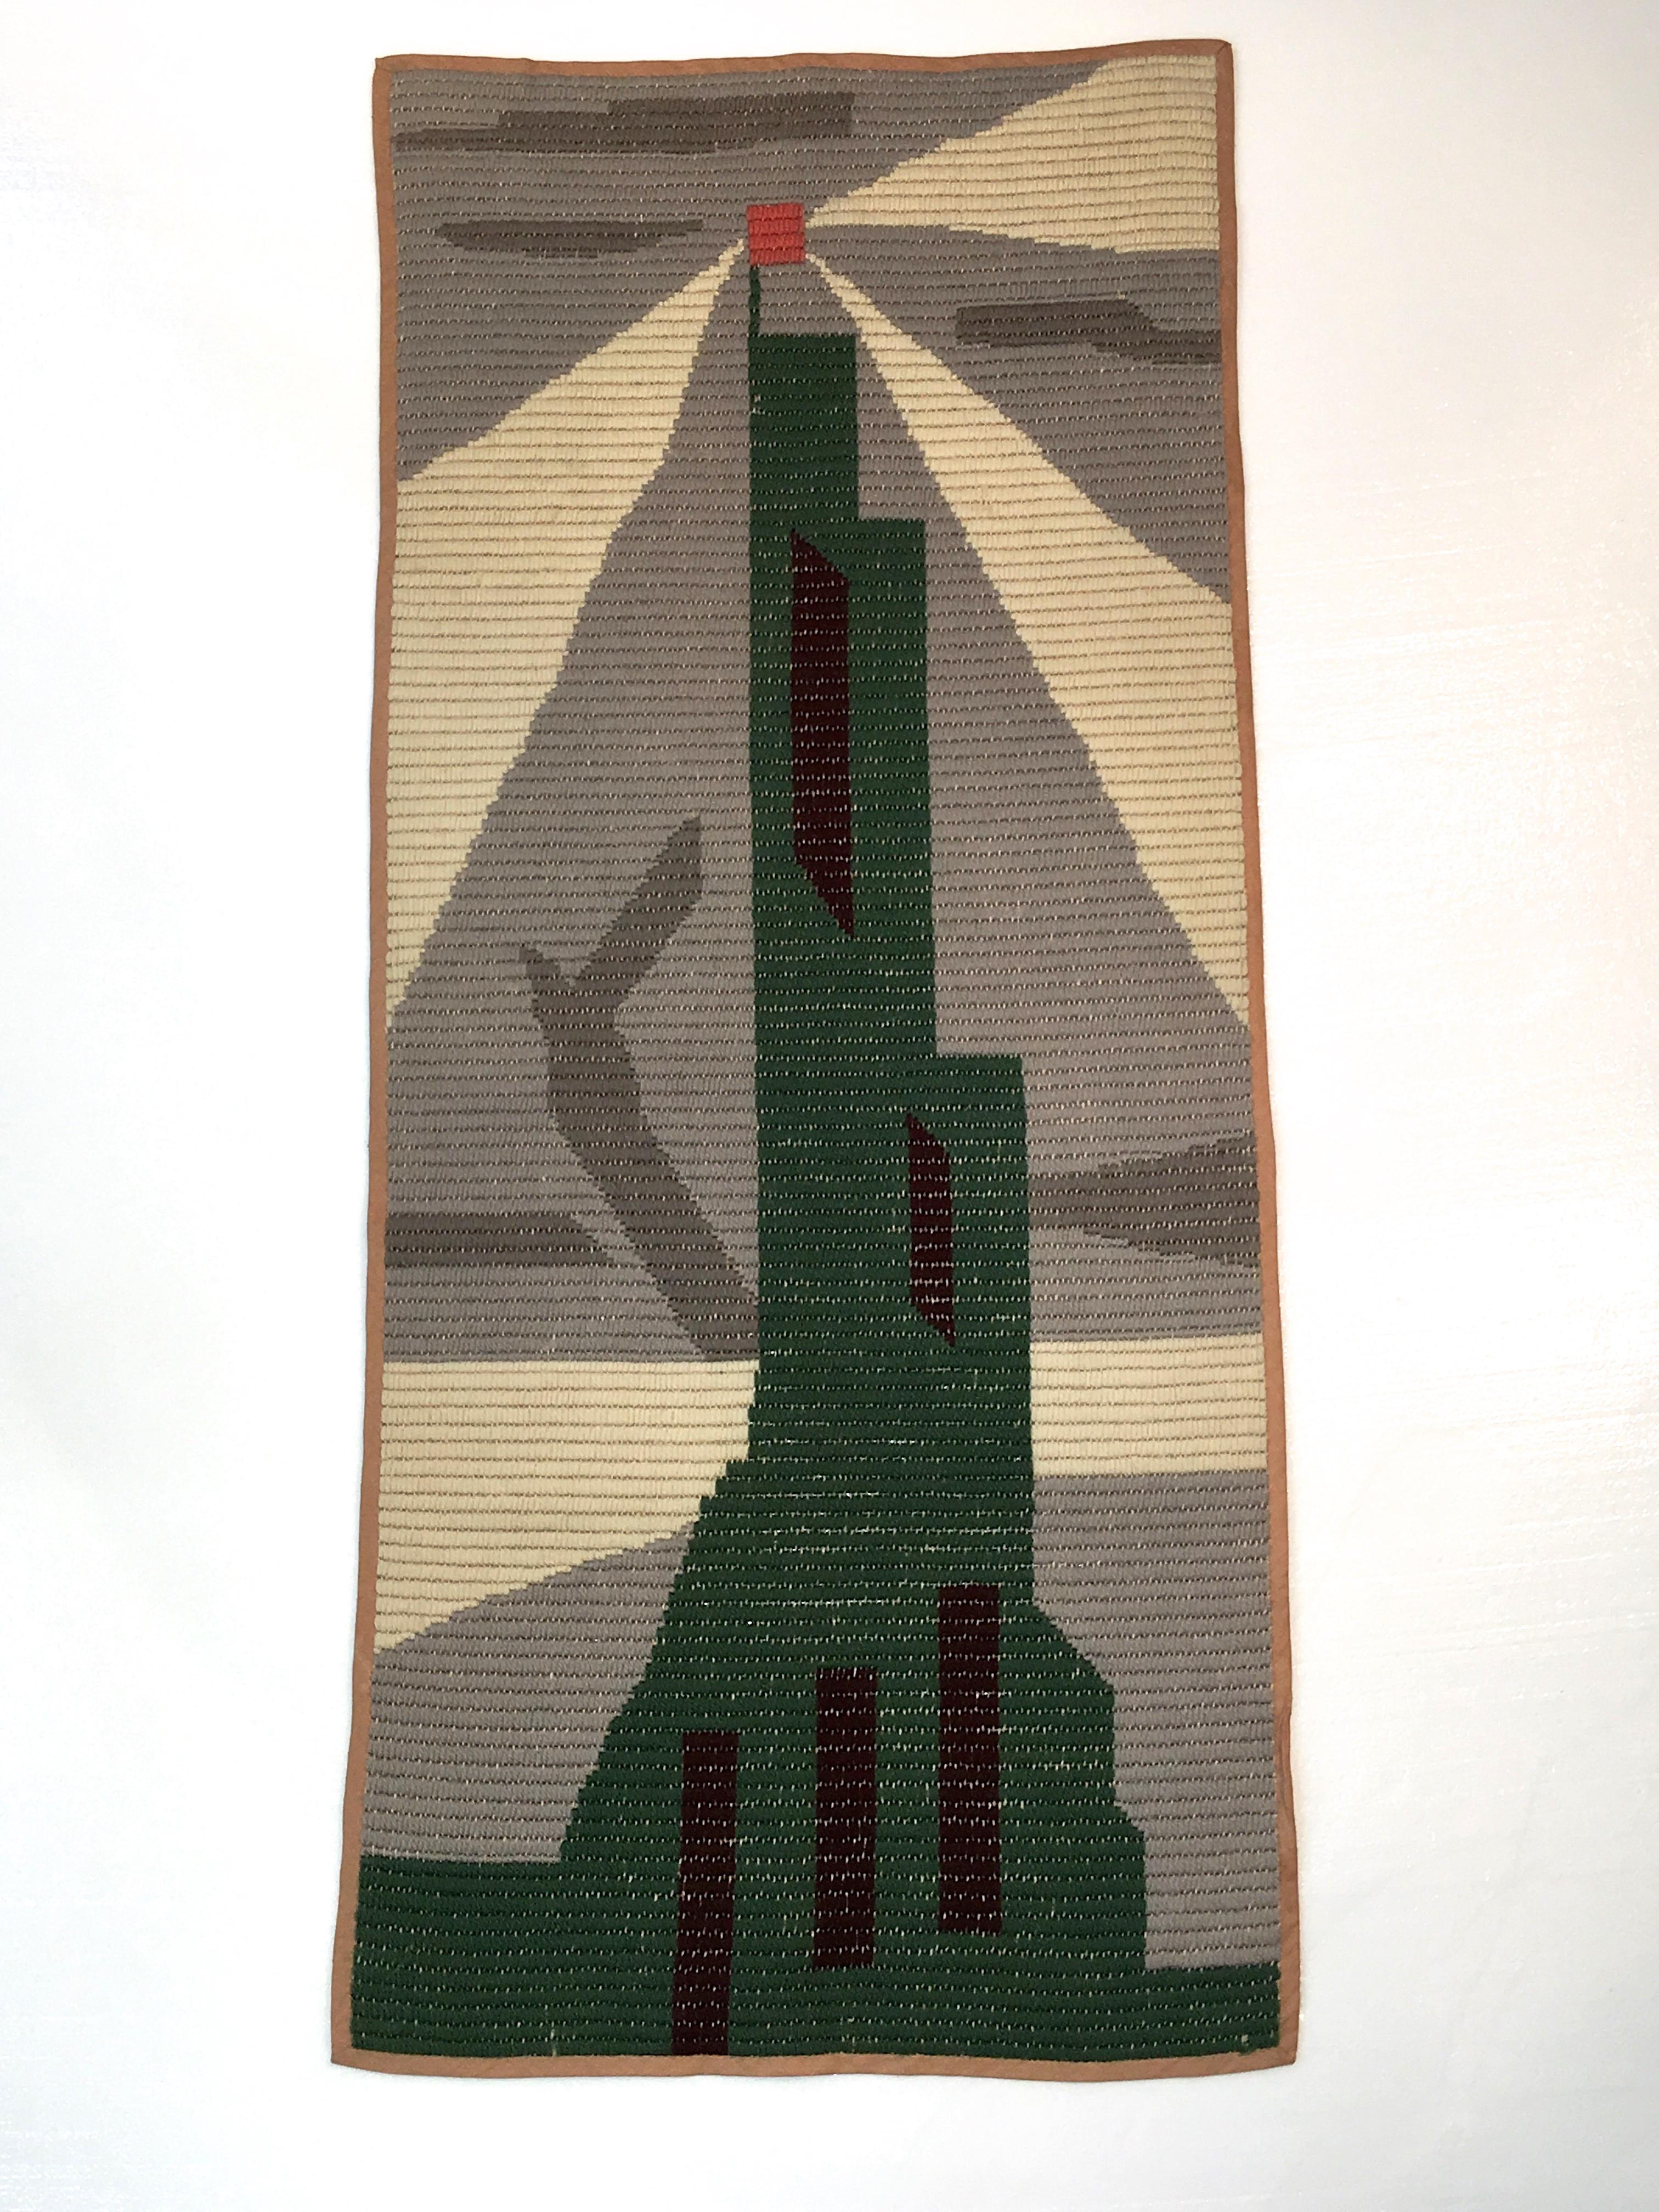 American Art Deco Knit Tapestry Skyscraper Design